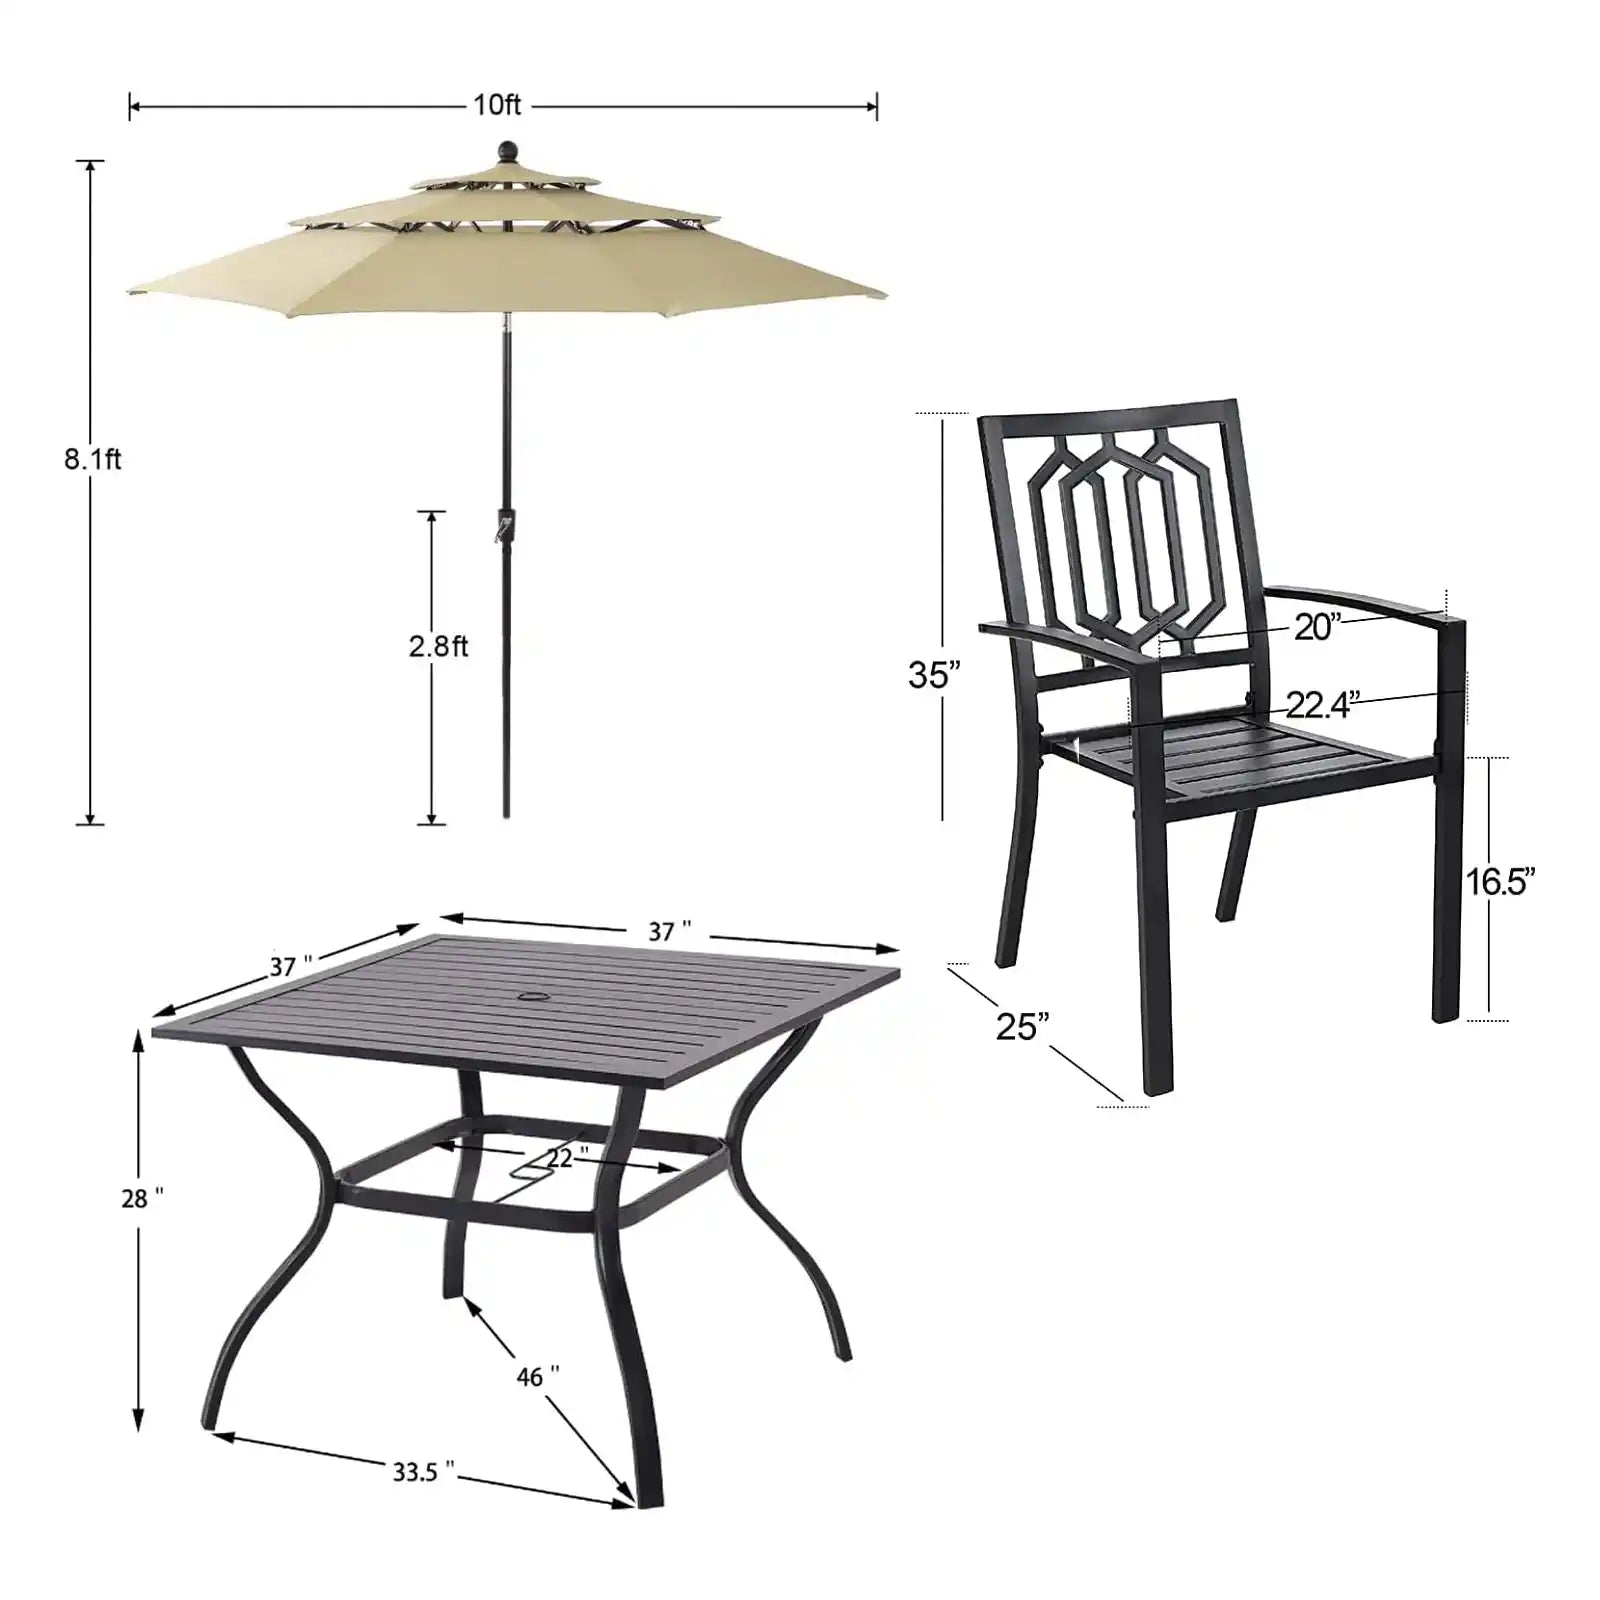 Juego de comedor para patio, 6 piezas con sombrilla, 1 mesa cuadrada de metal, 4 sillas apilables de metal para exteriores y sombrilla de inclinación automática de 3 niveles de 10 pies 